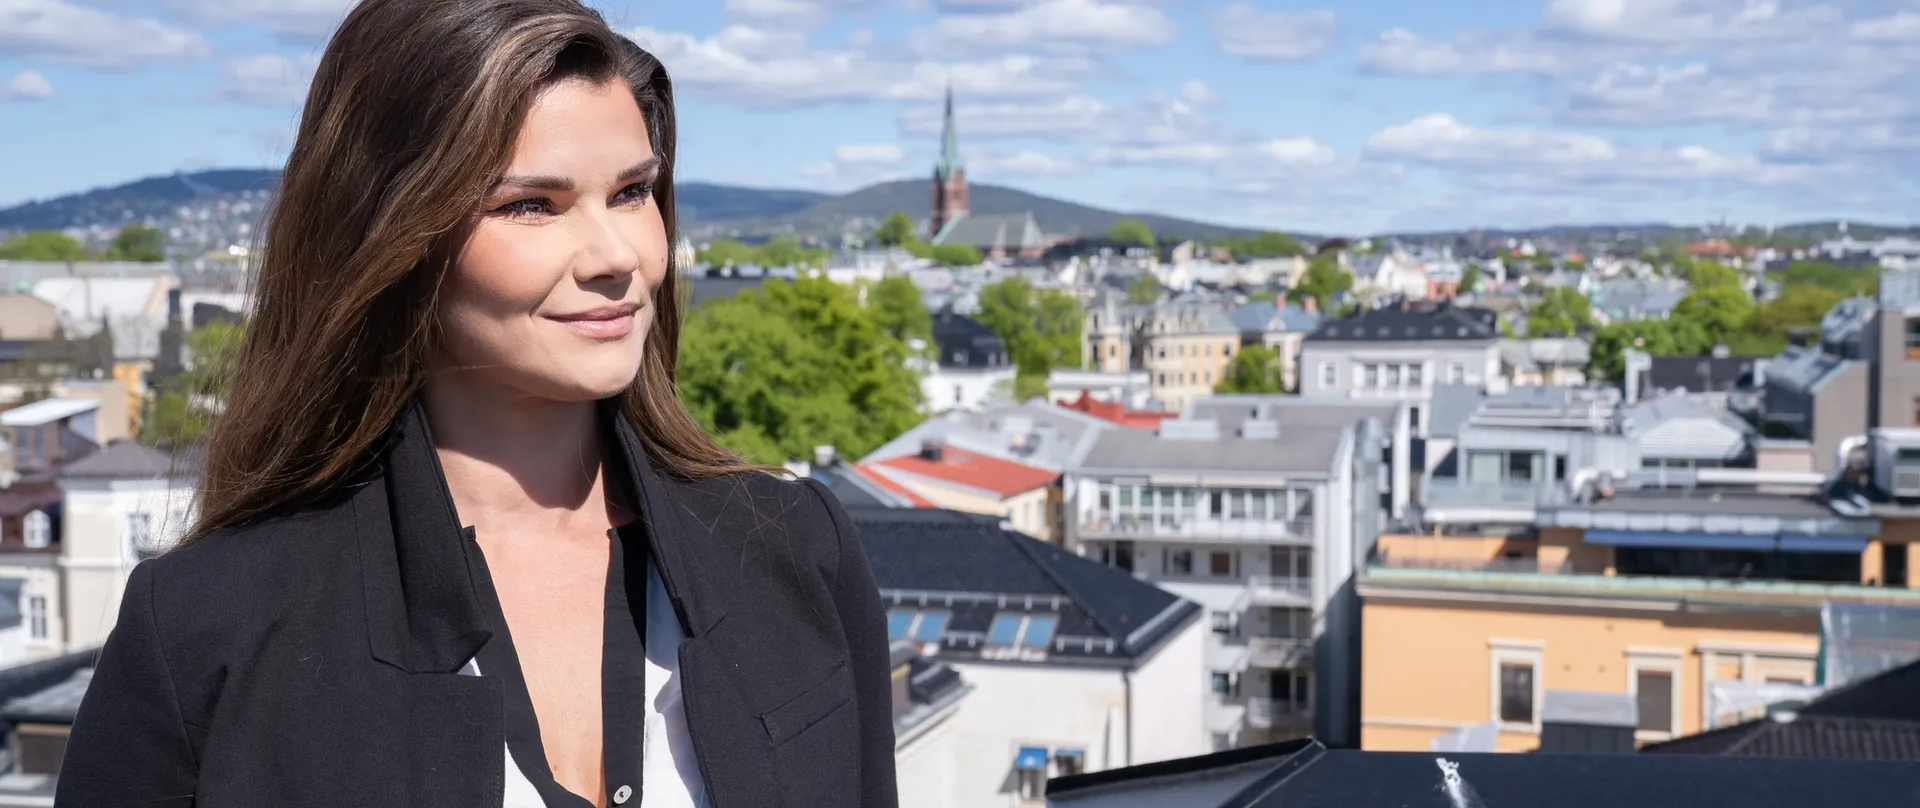 Monica Beate Tvedt er en av Norges 50 fremste teknologikvinner